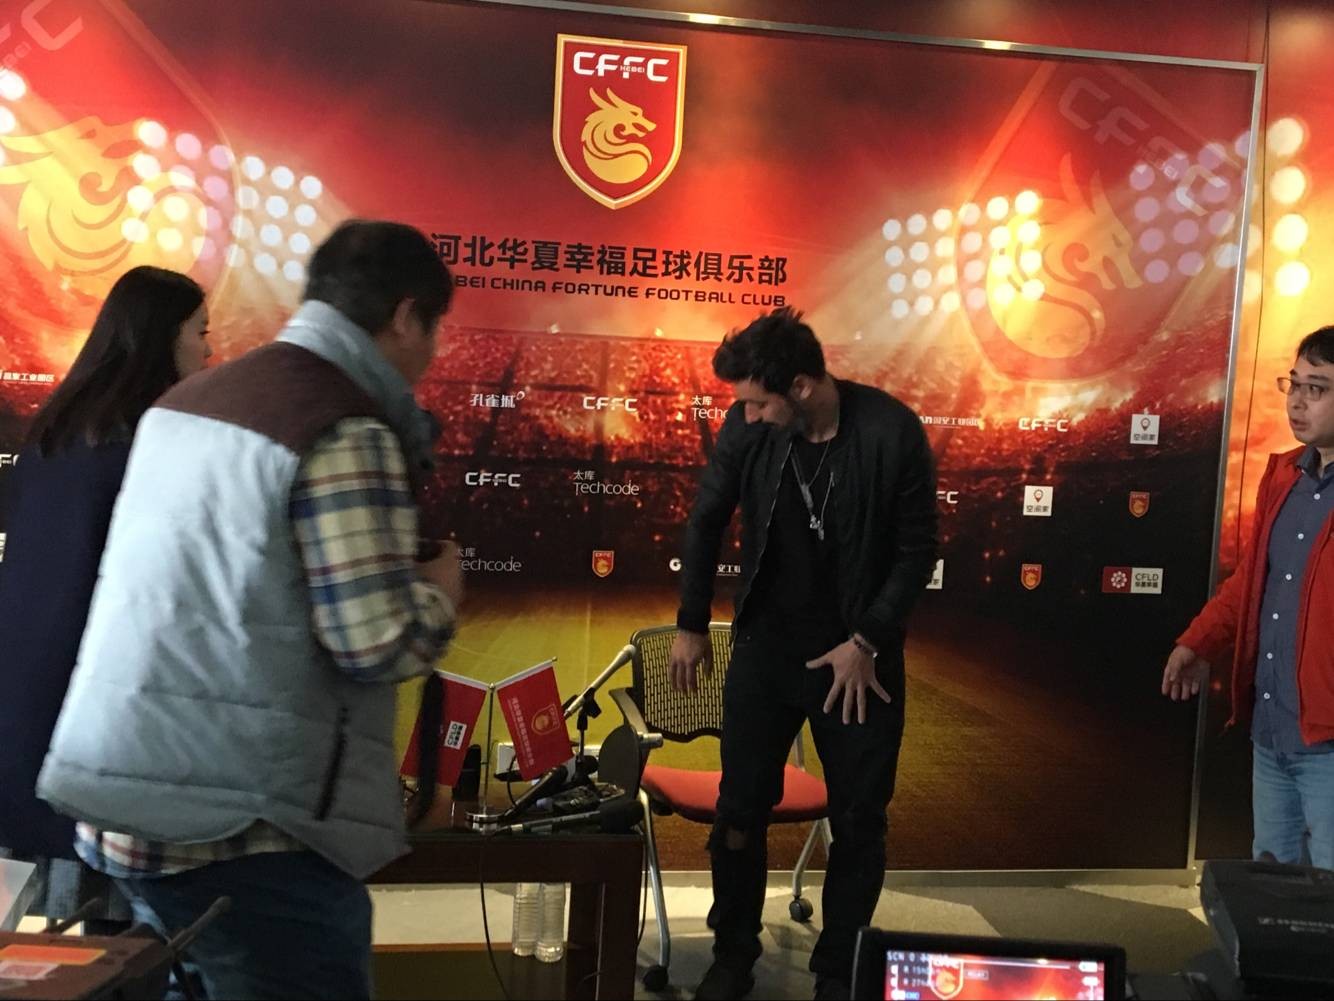 拉维奇:对中国足球很感兴趣;希望球队明年能够